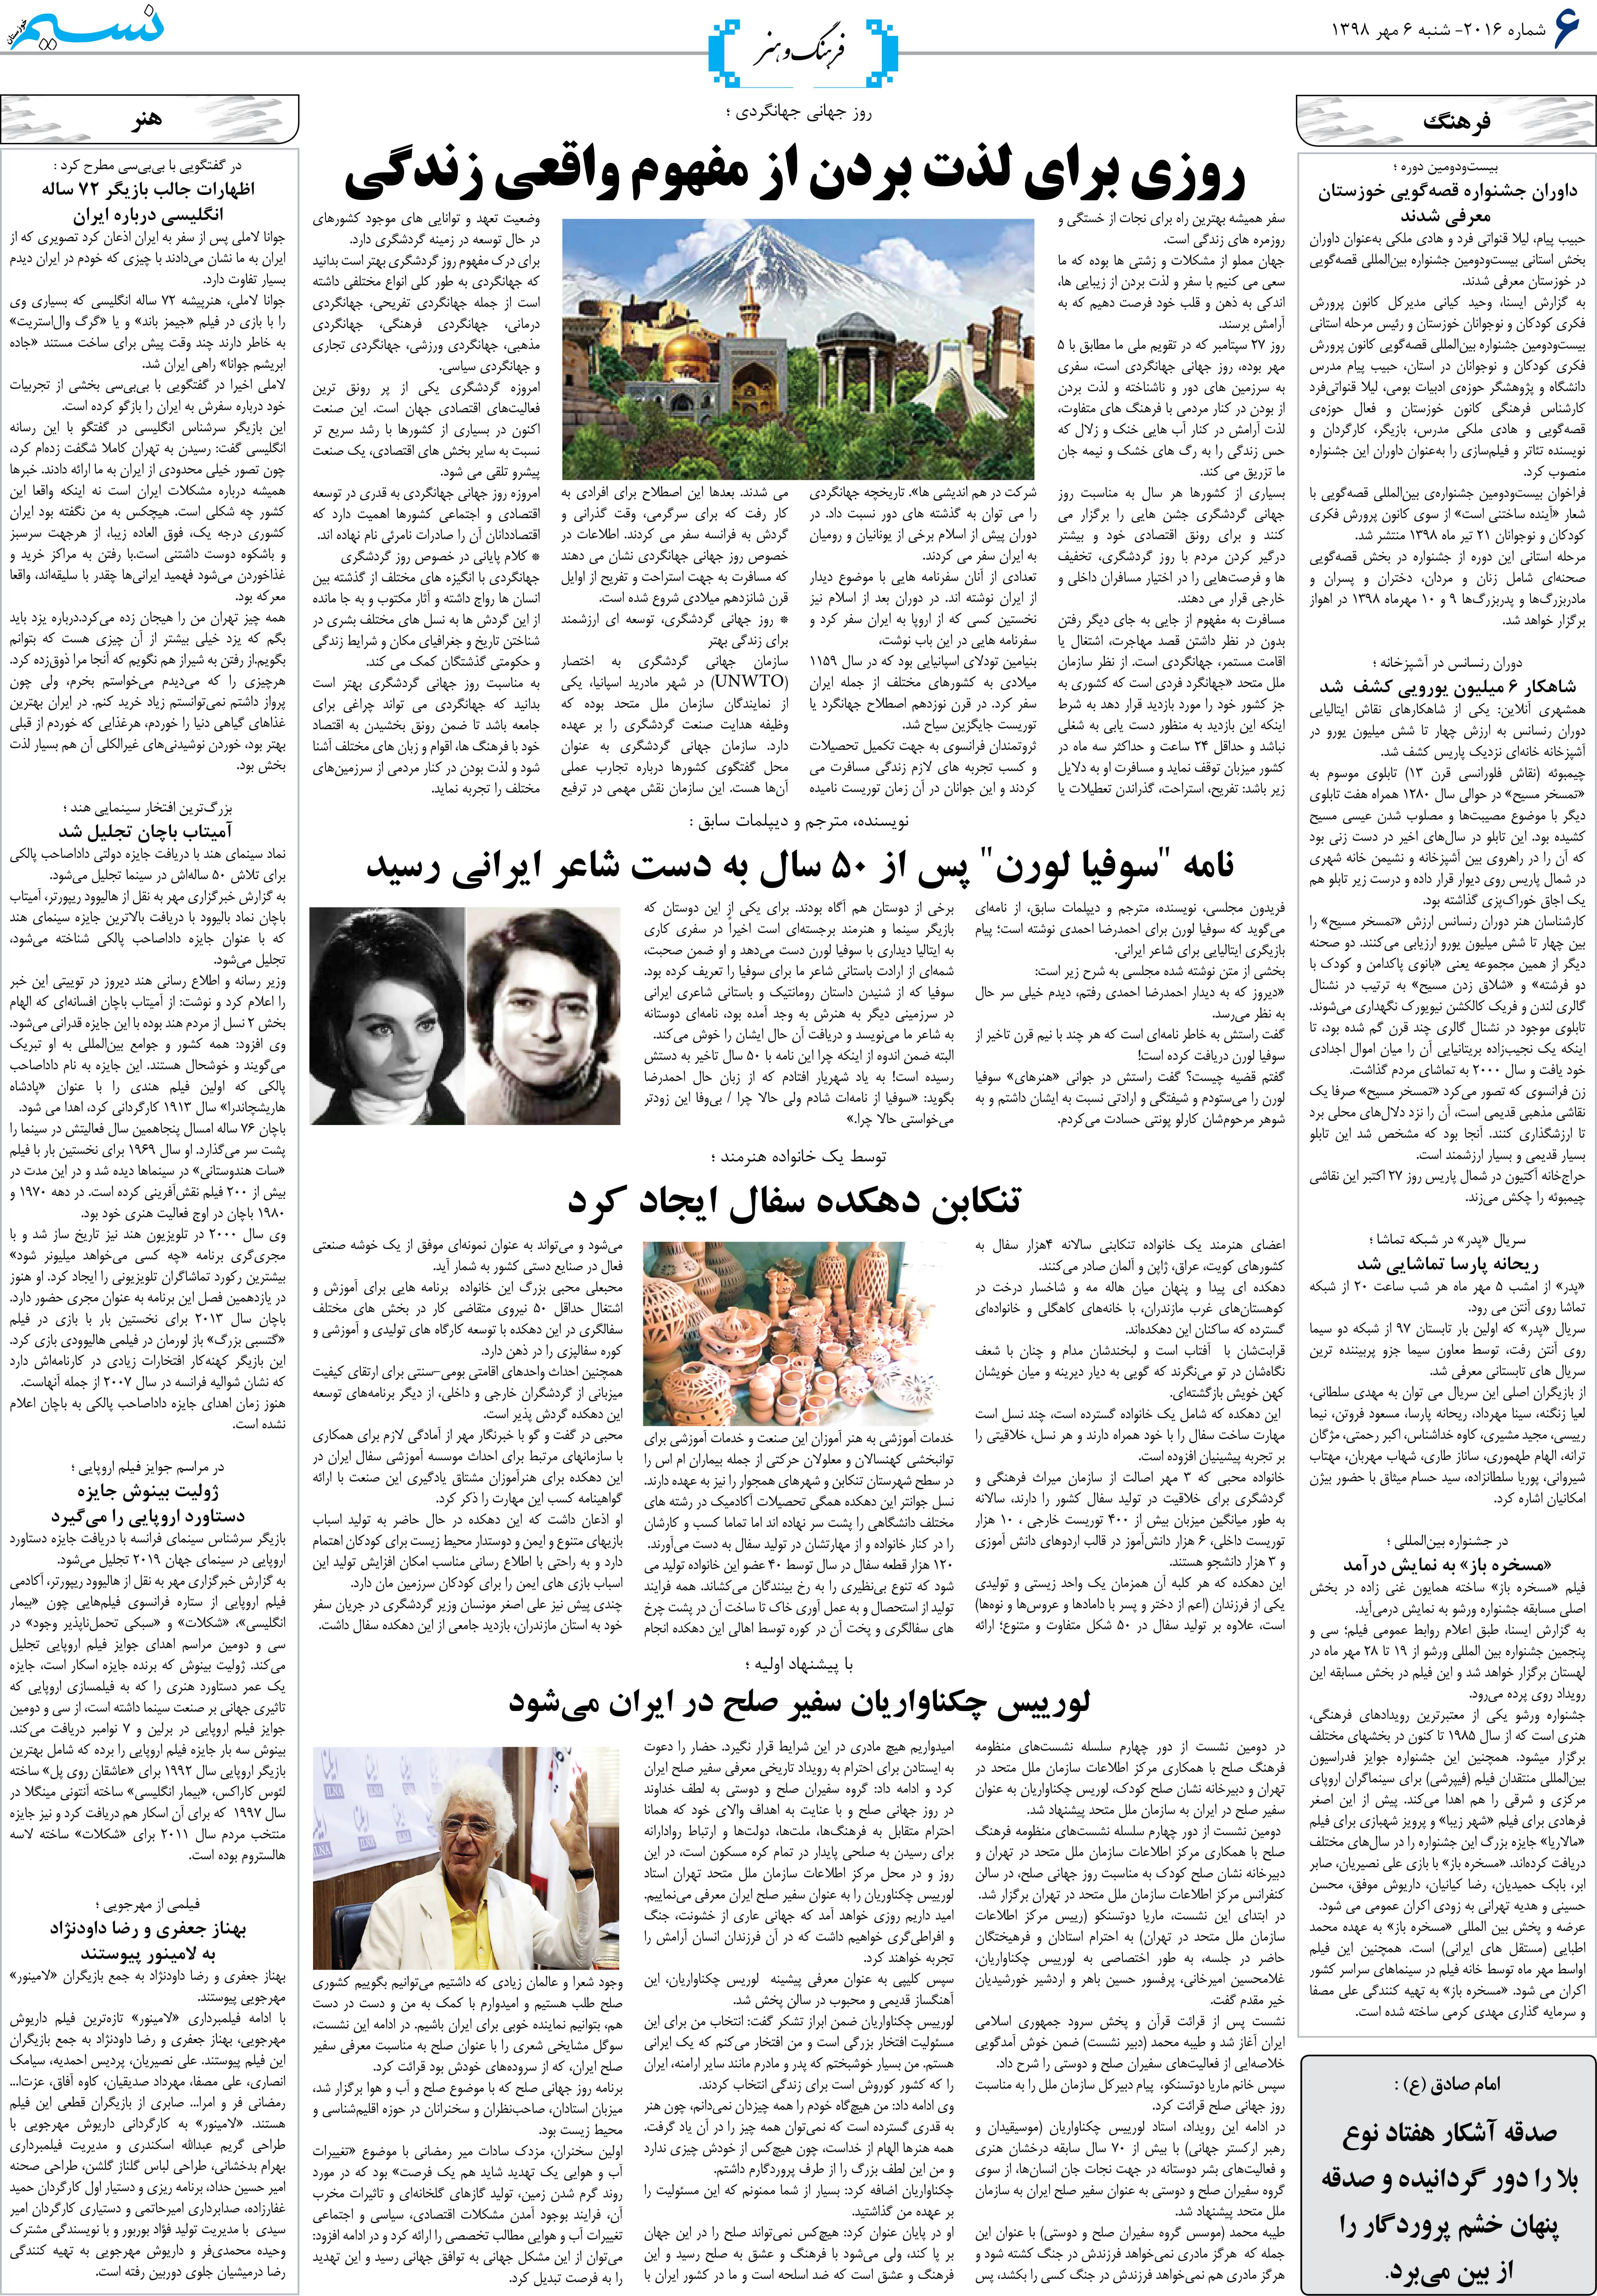 صفحه فرهنگ و هنر روزنامه نسیم شماره 2016